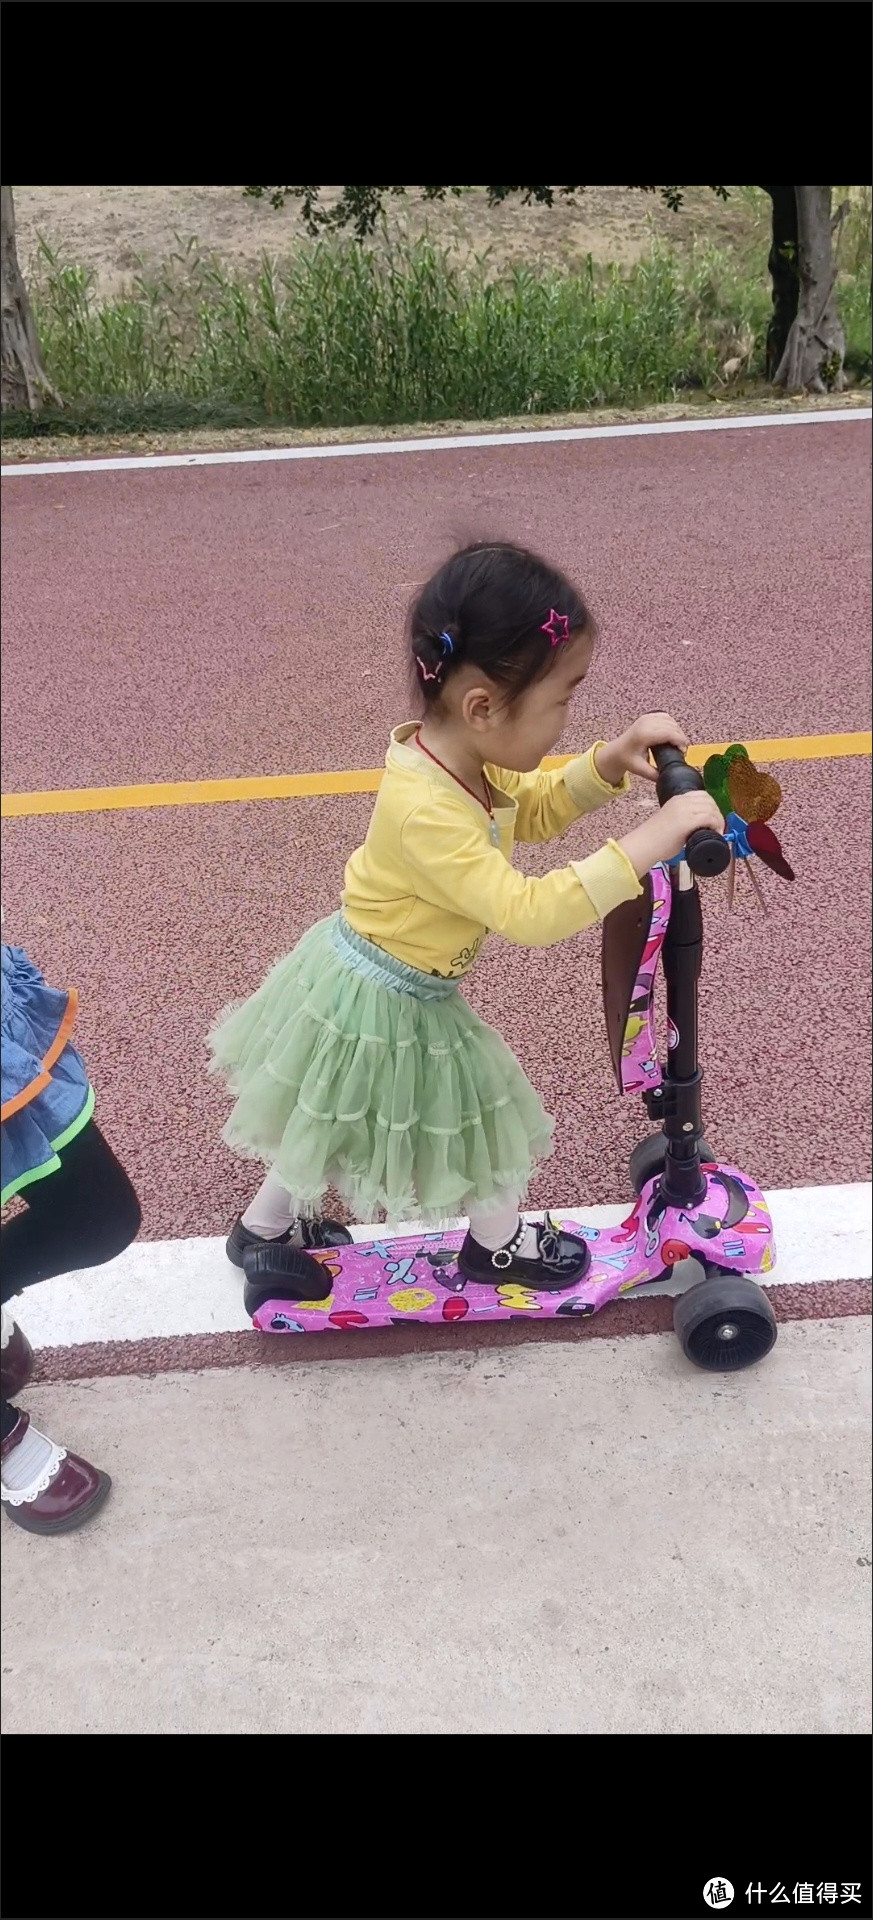 给女儿买的滑板车她就是挺喜欢的